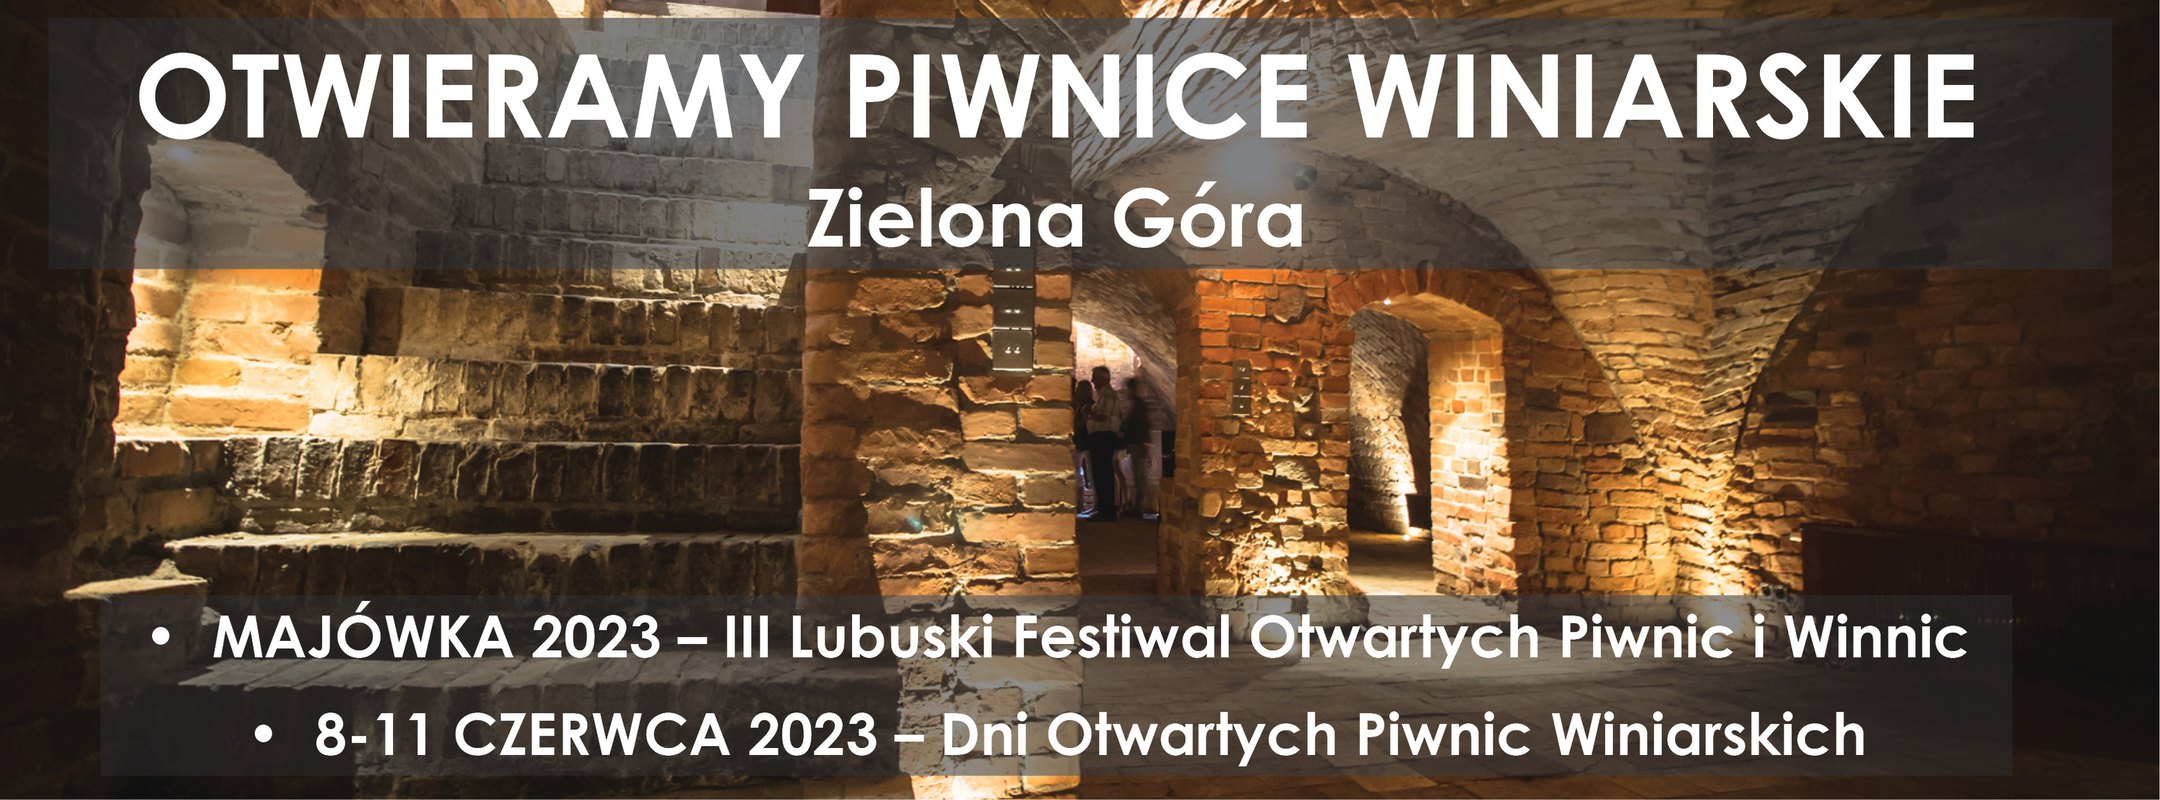 Dni Otwartych Piwnic Winiarskich; czerwiec 2023